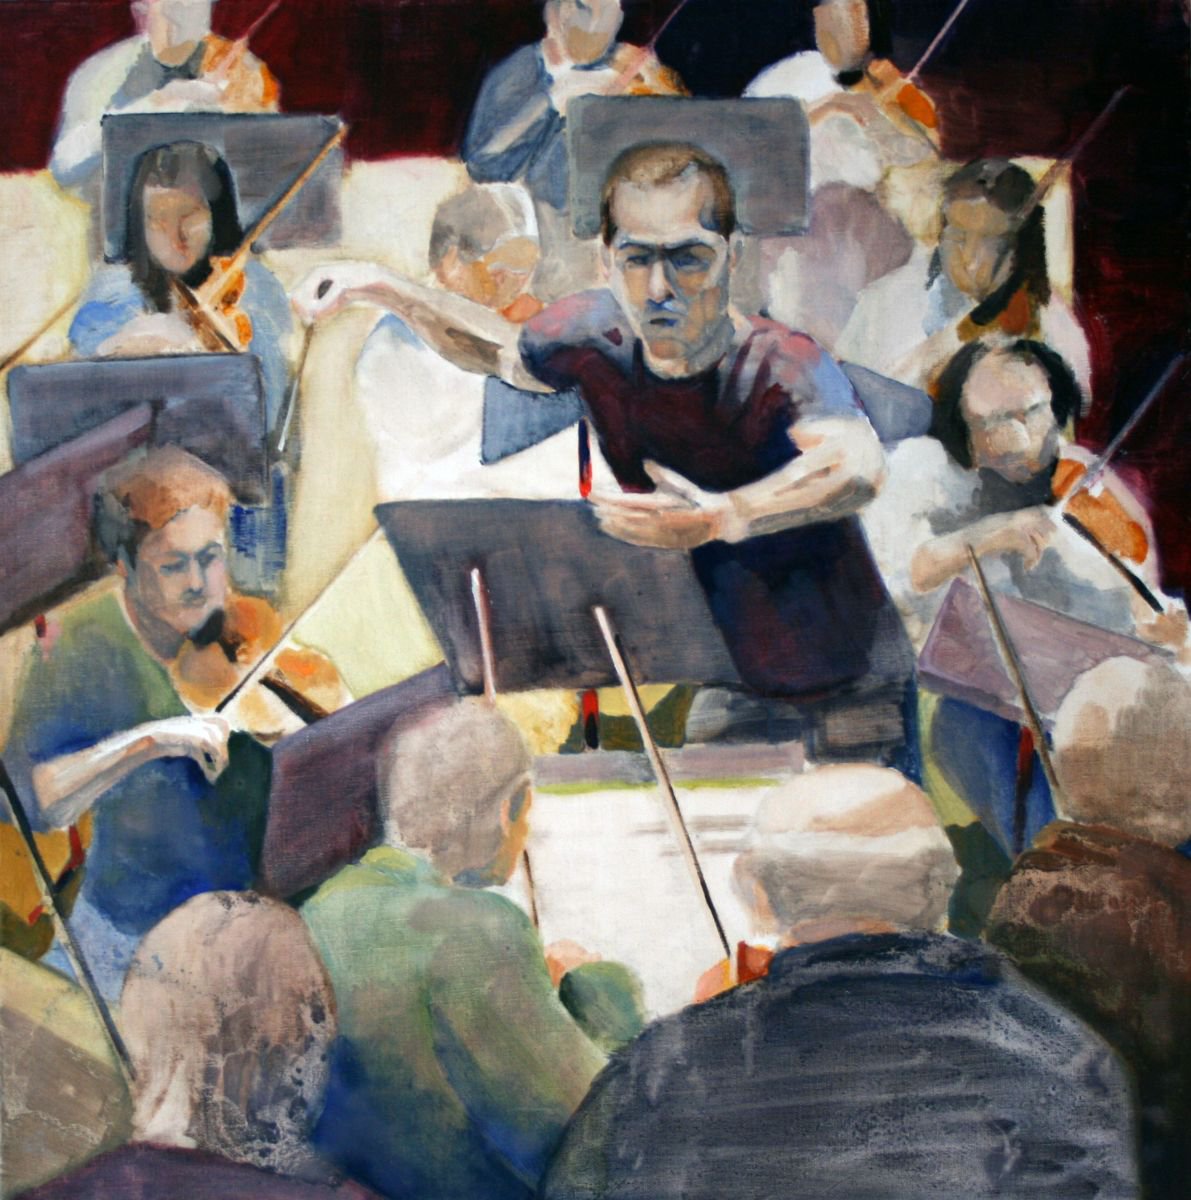 The Conductor by Dick van Dijk